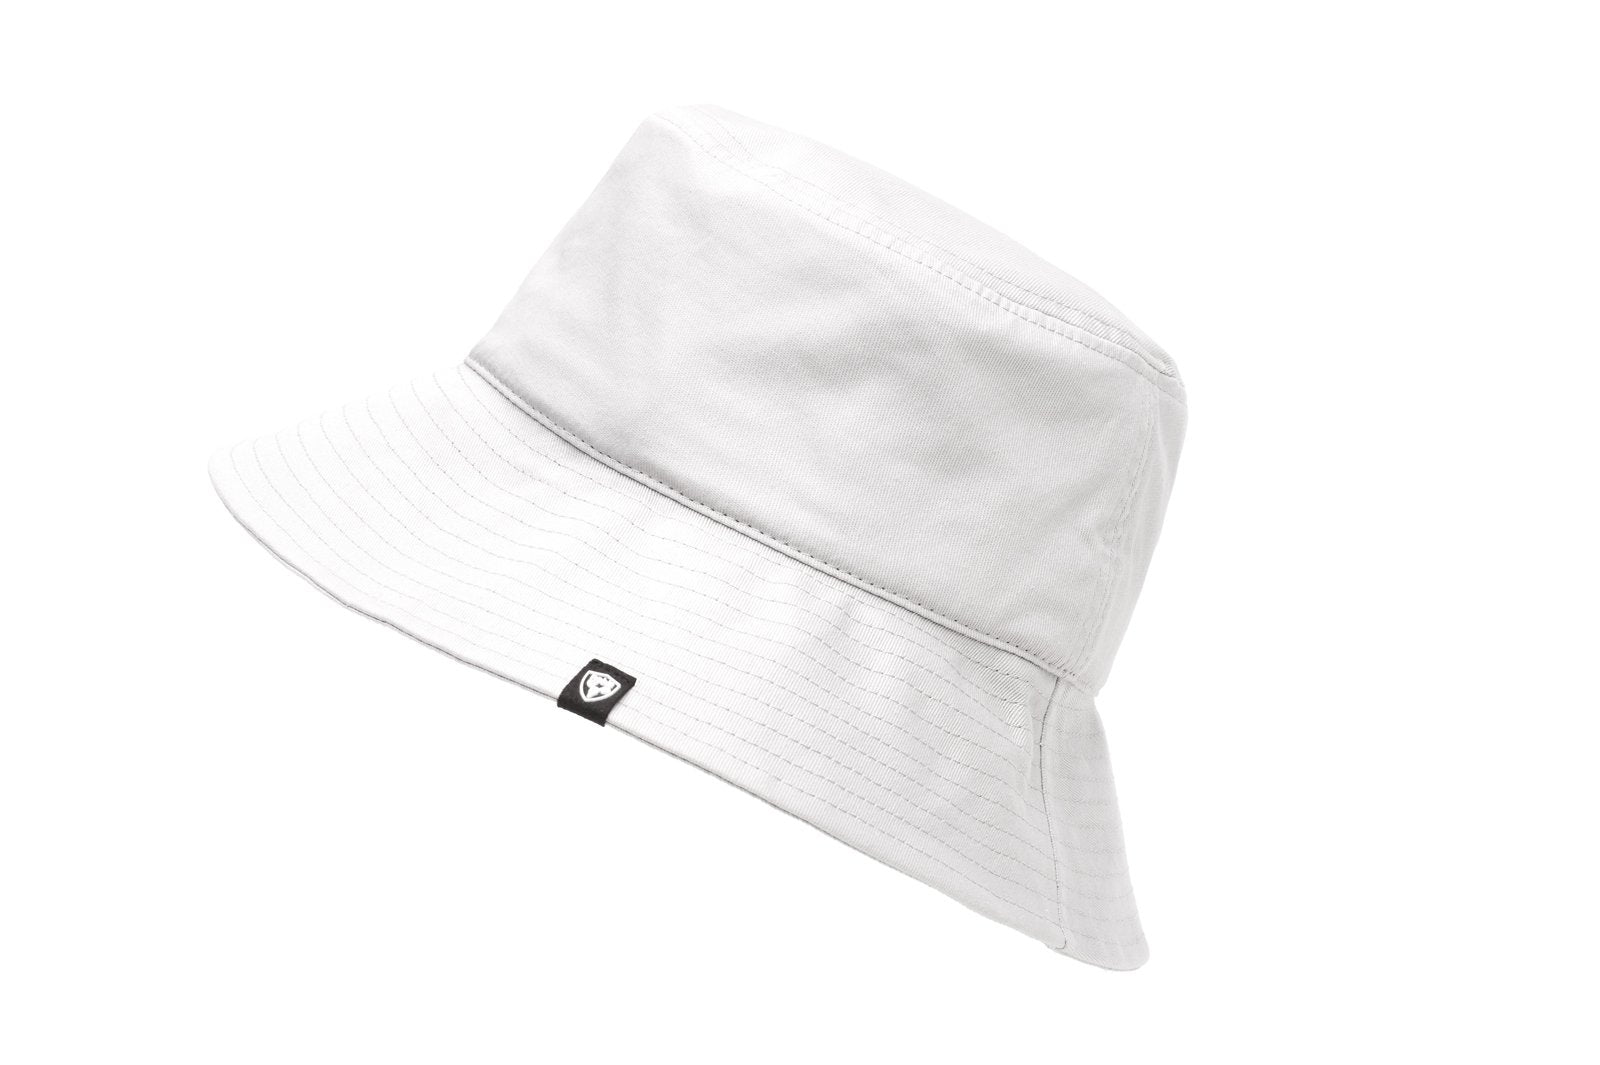 Argon unisex Bucket Hat Next by Nobis / Black / One Size / TEST_1234